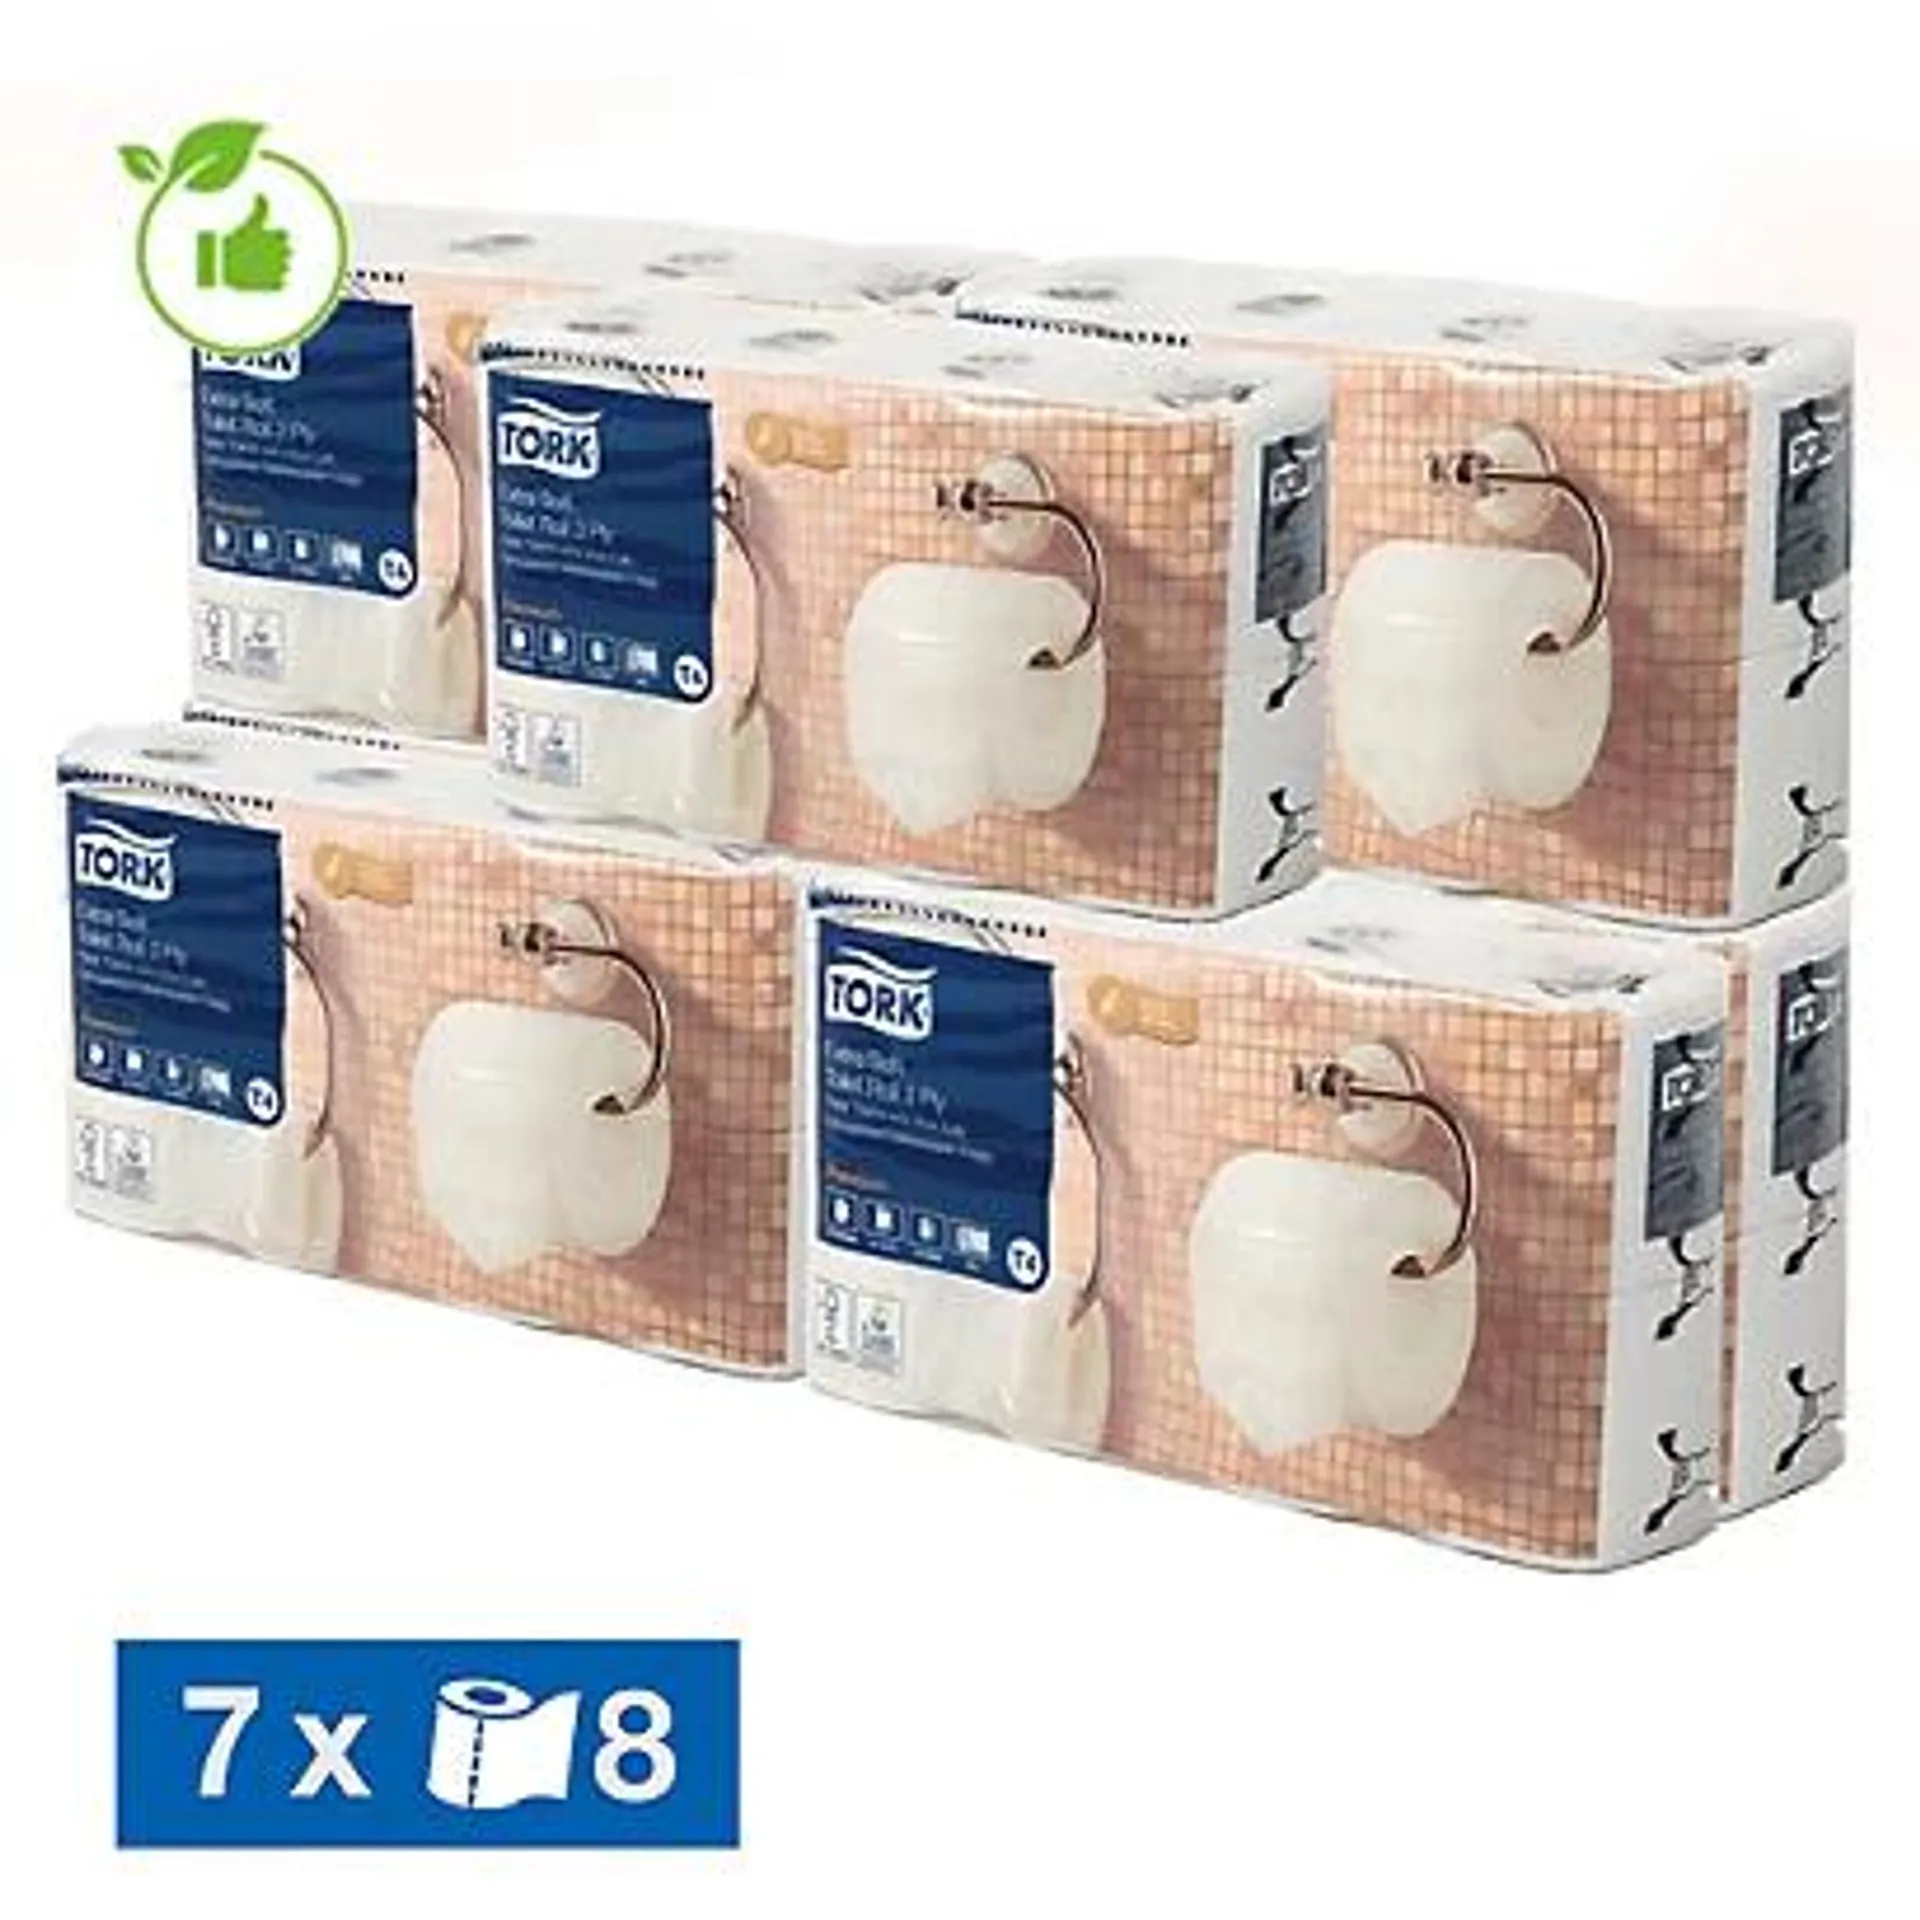 Toiletpapier Tork Premium extra zacht 3-laags, set van 56 rollen